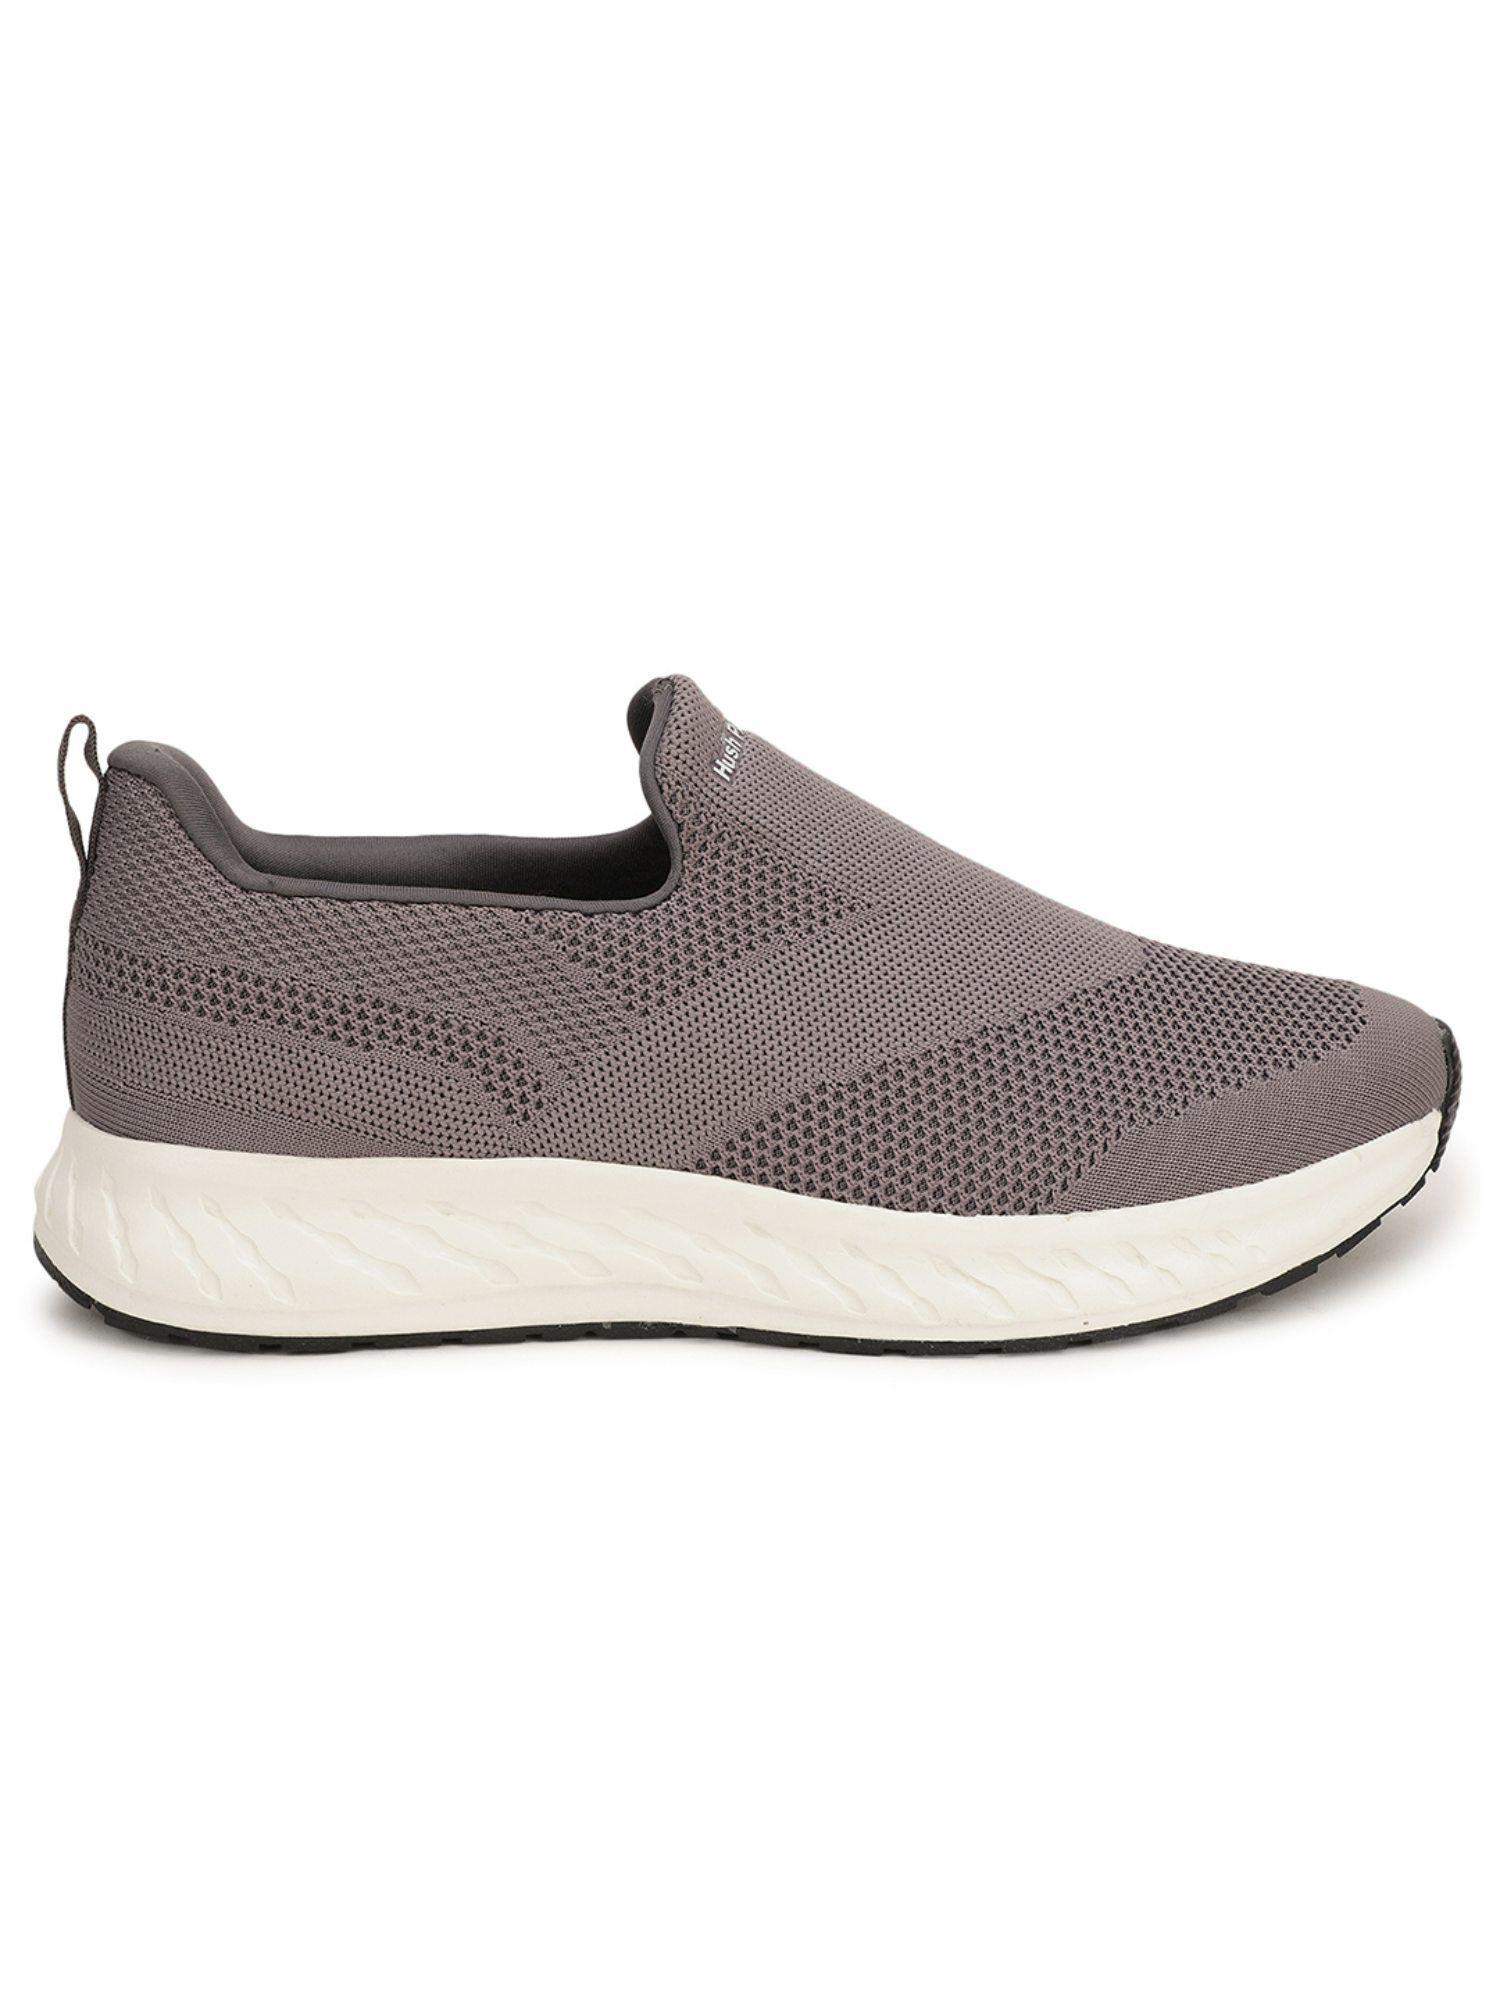 textured grey sneakers